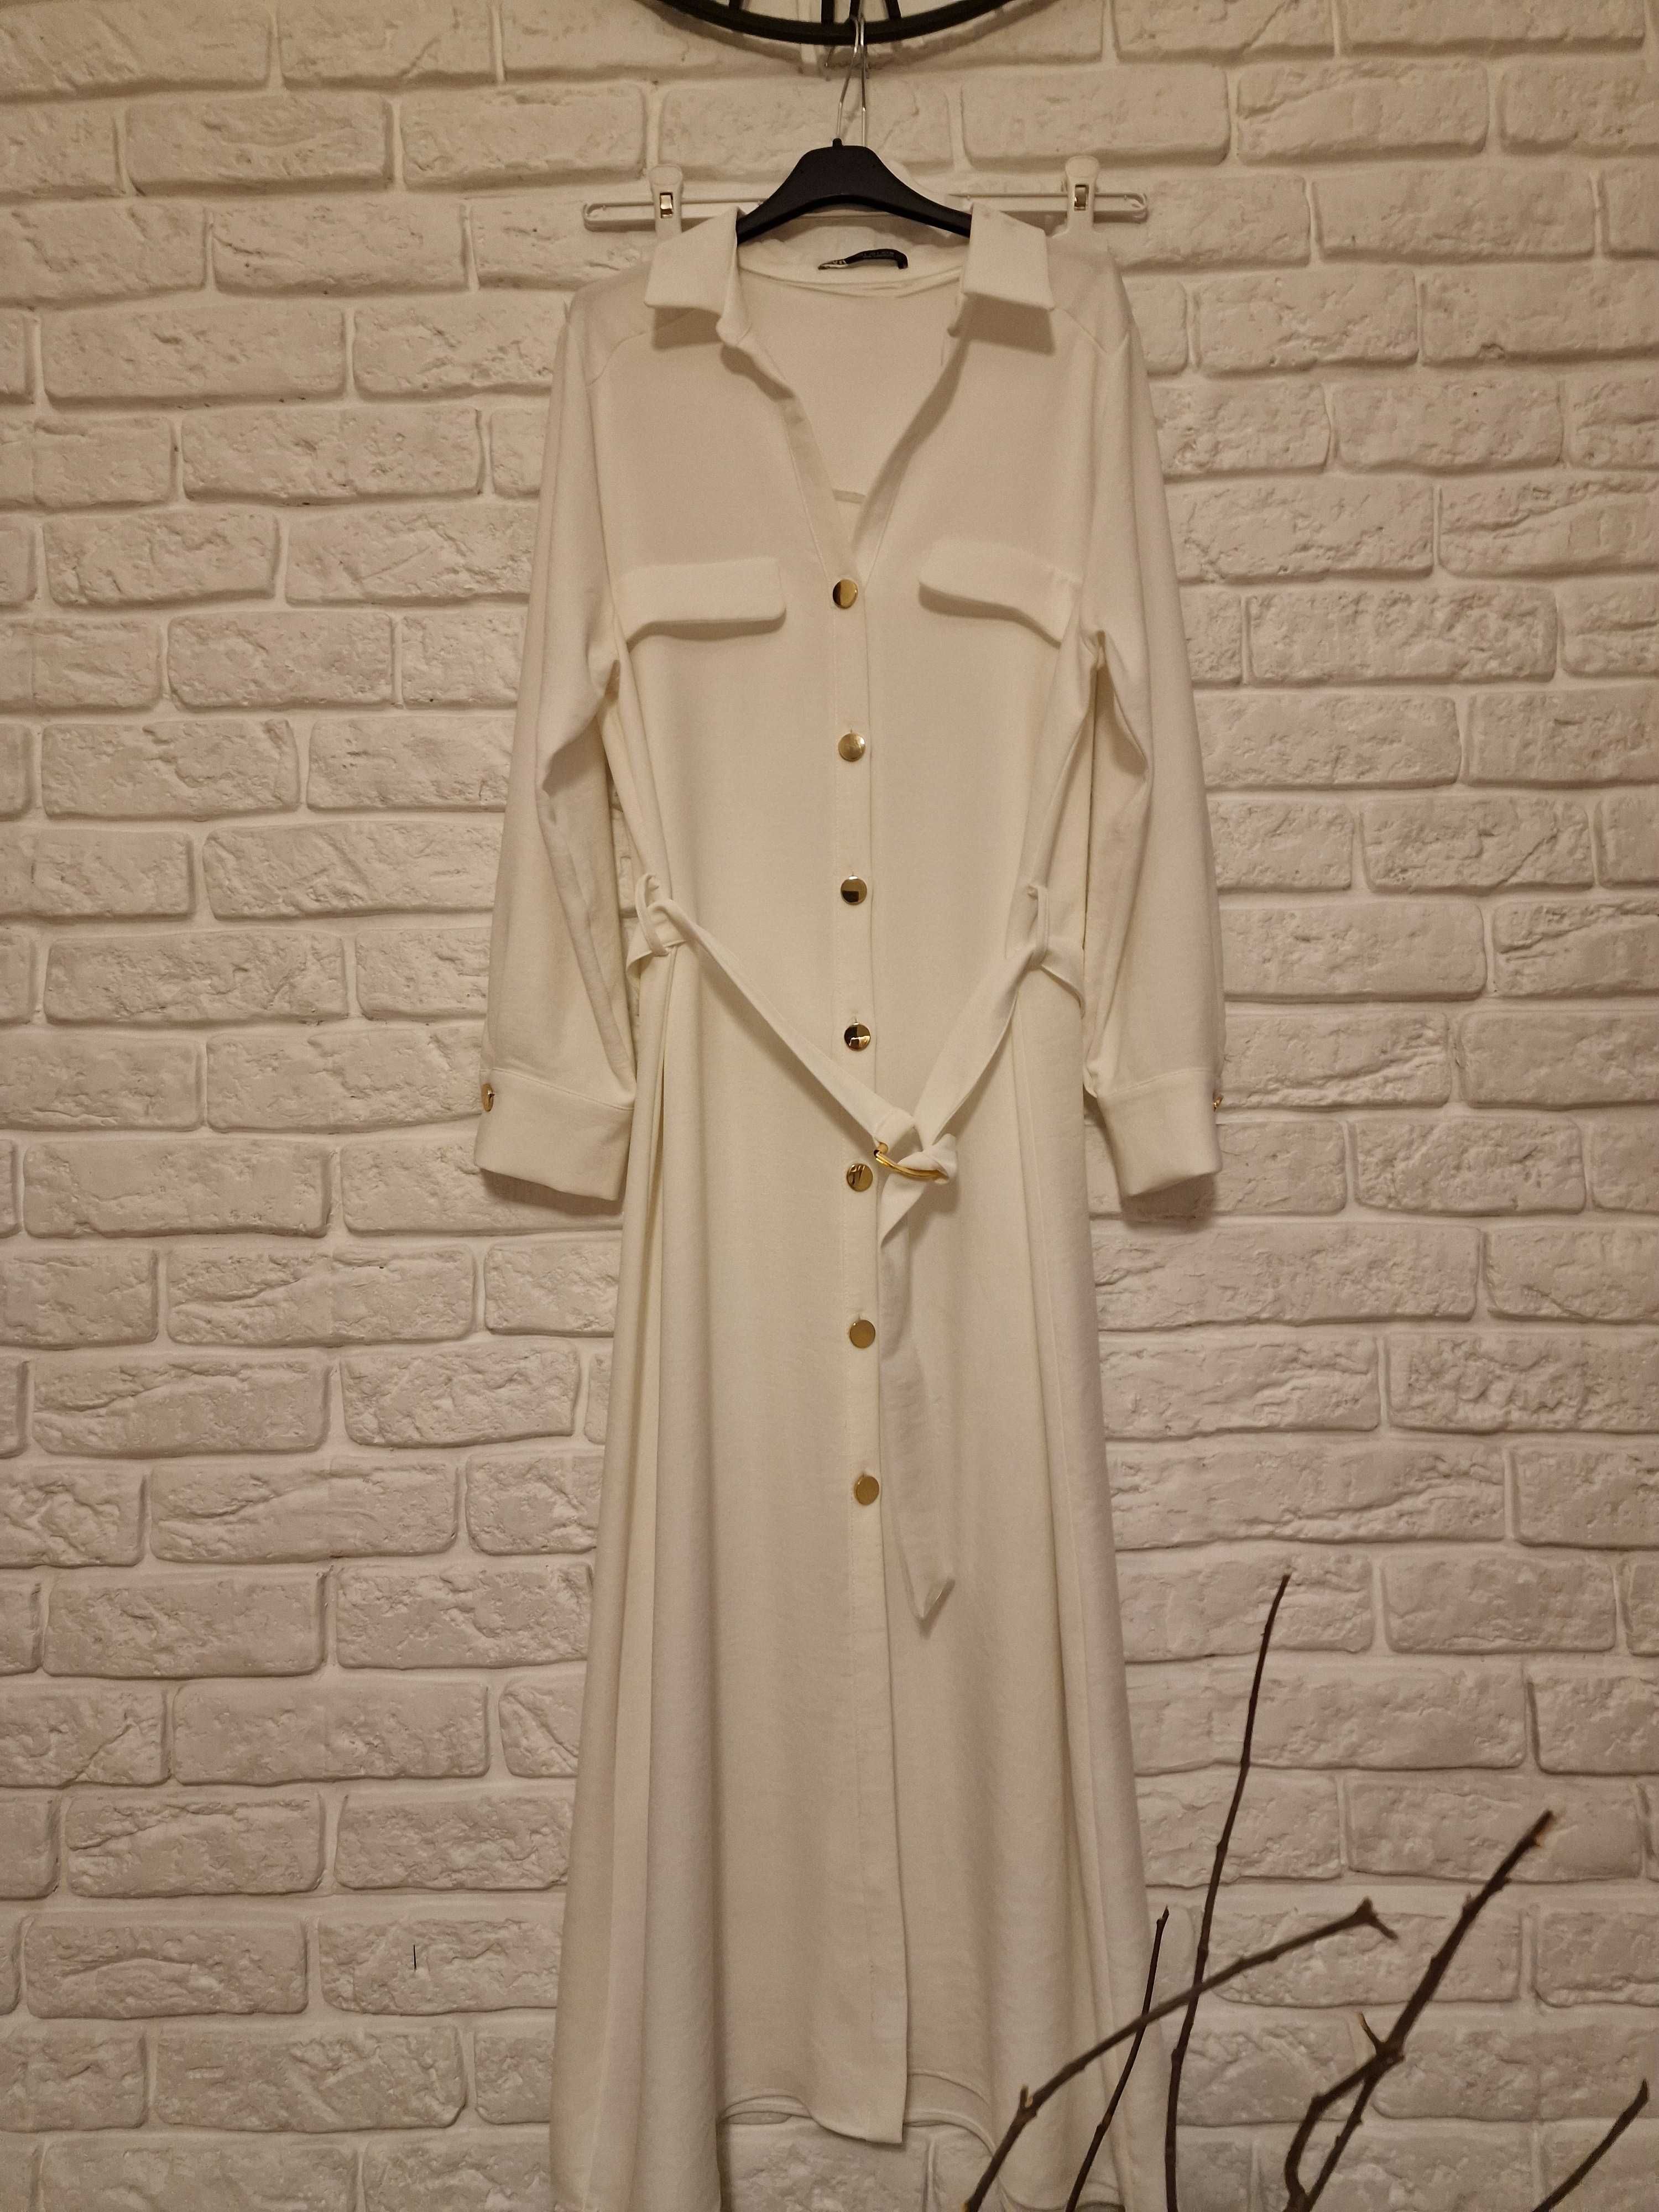 Sukienka Zara Maxi kremowa komunia wesele rozmiar L rozmiar 40 długa